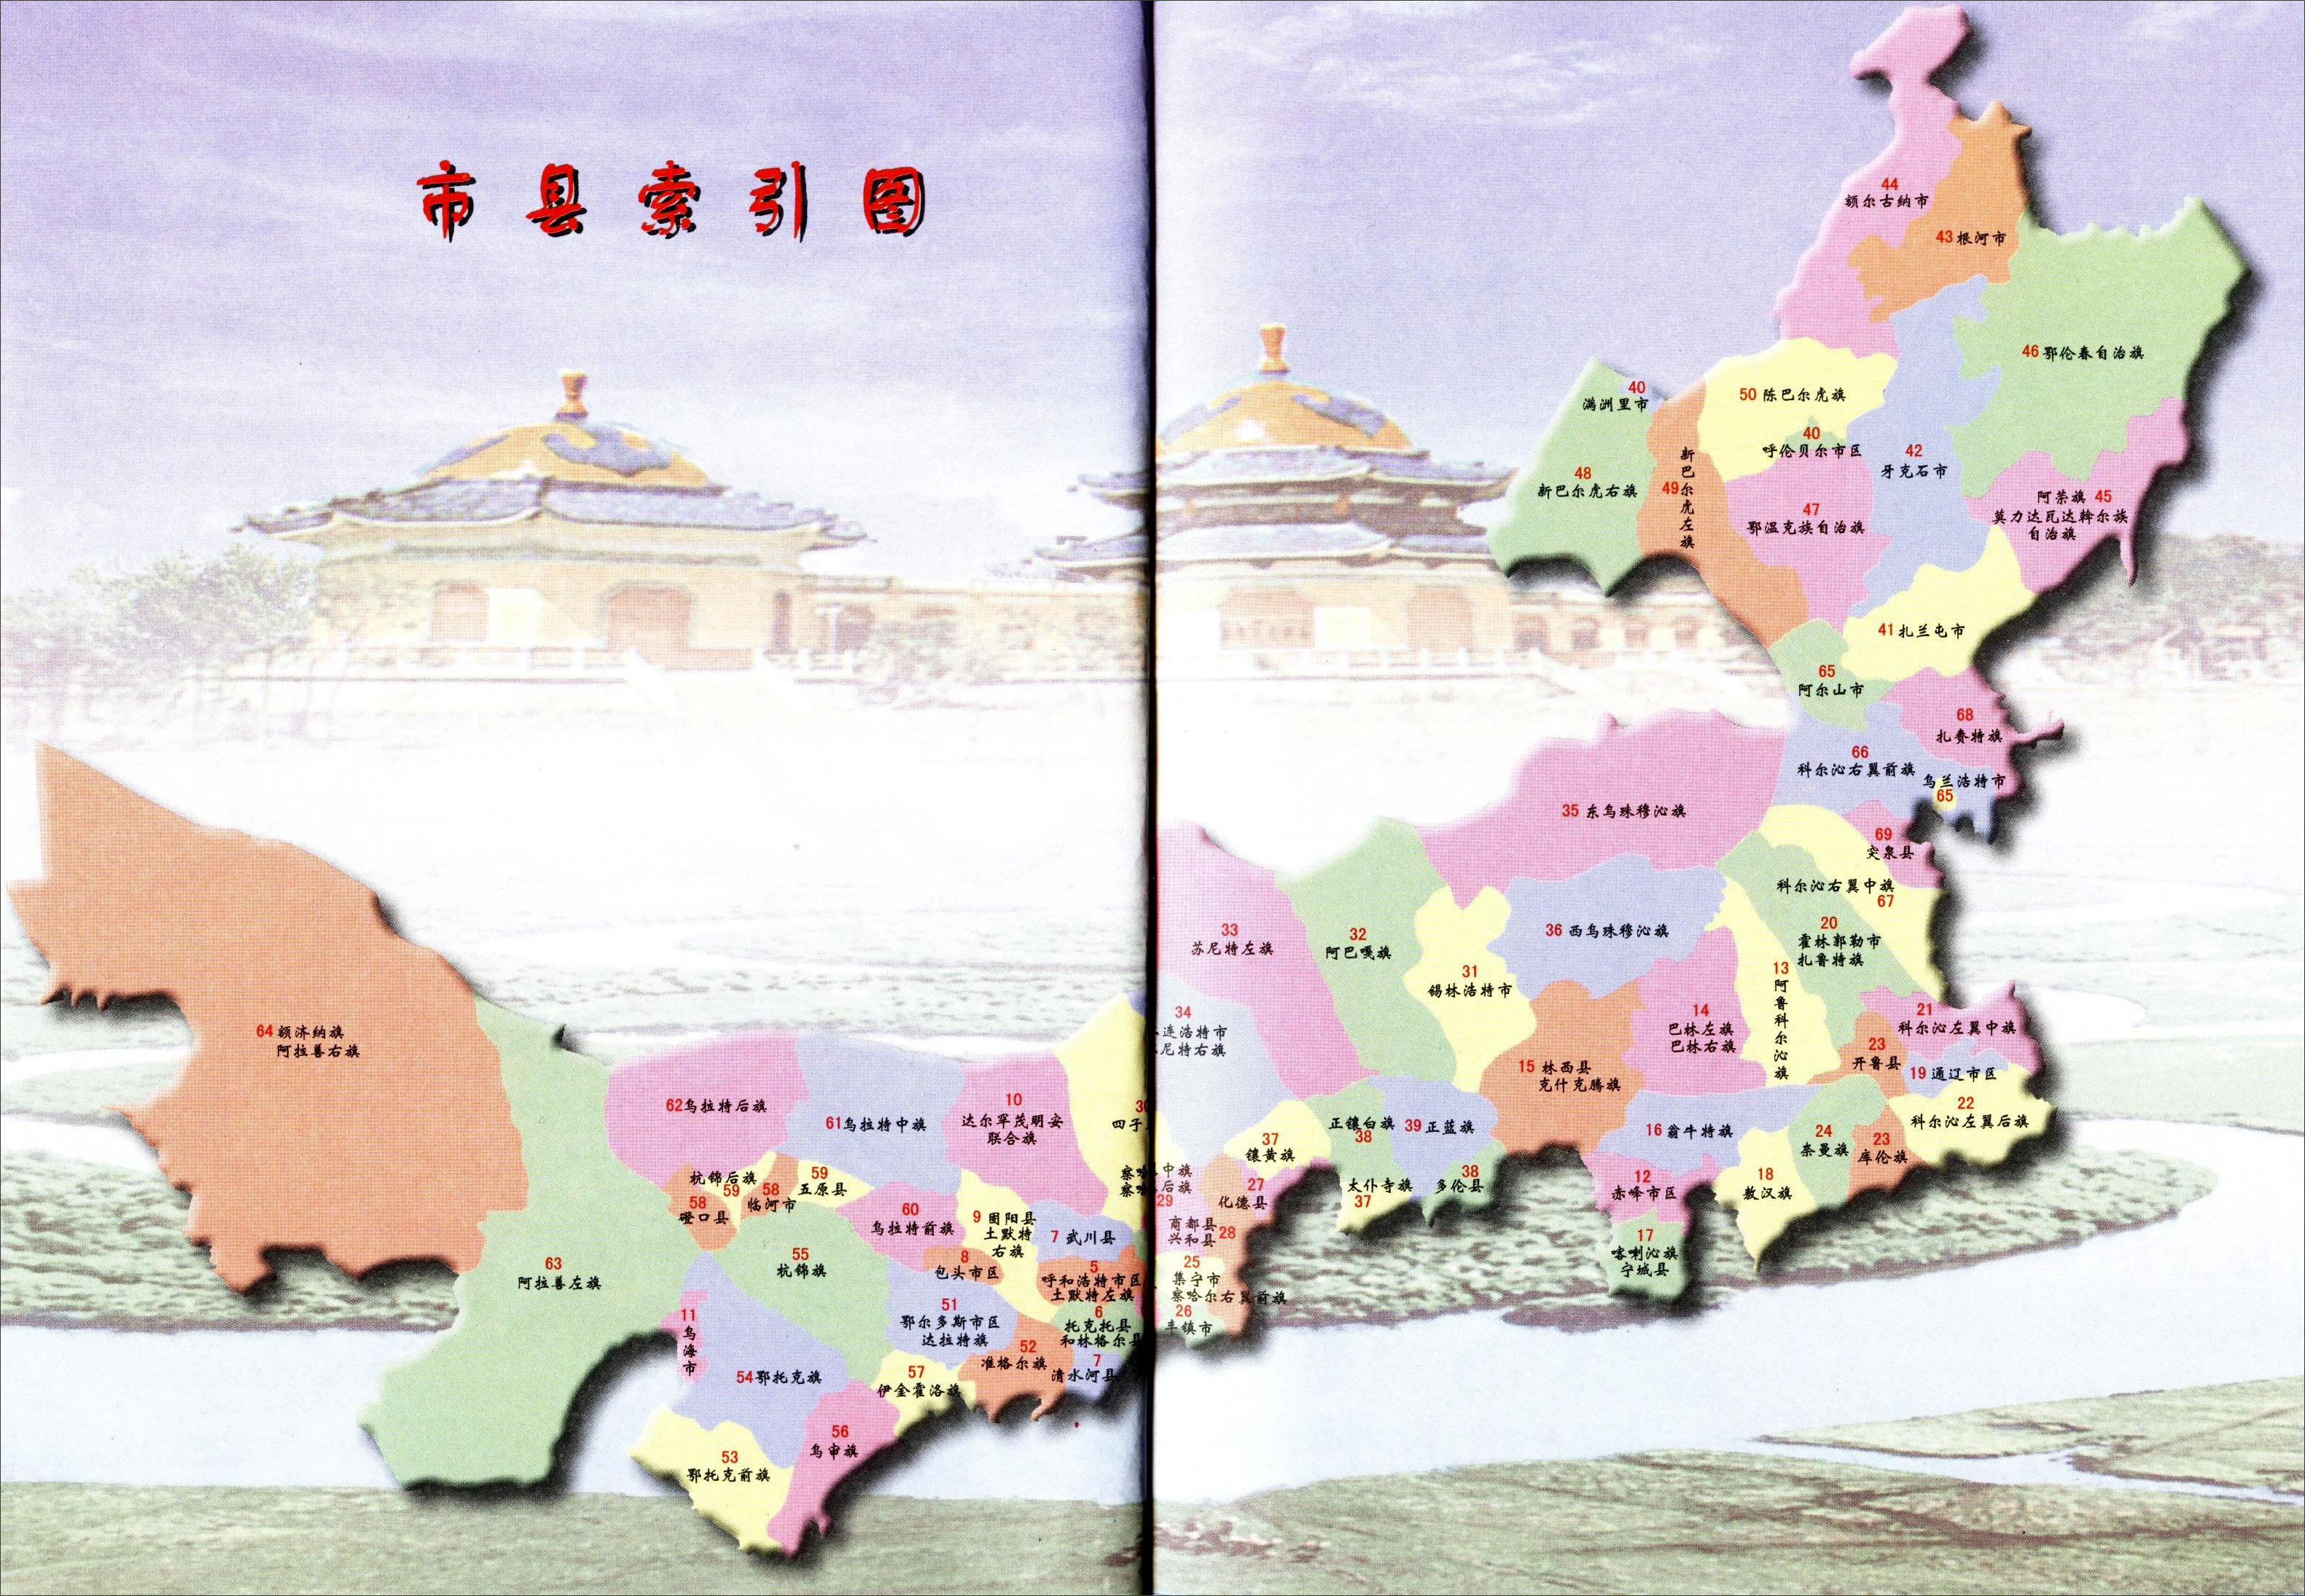 甘肃  宁夏  新疆  青海  西藏  香港  澳门  台湾 上一幅地图图片